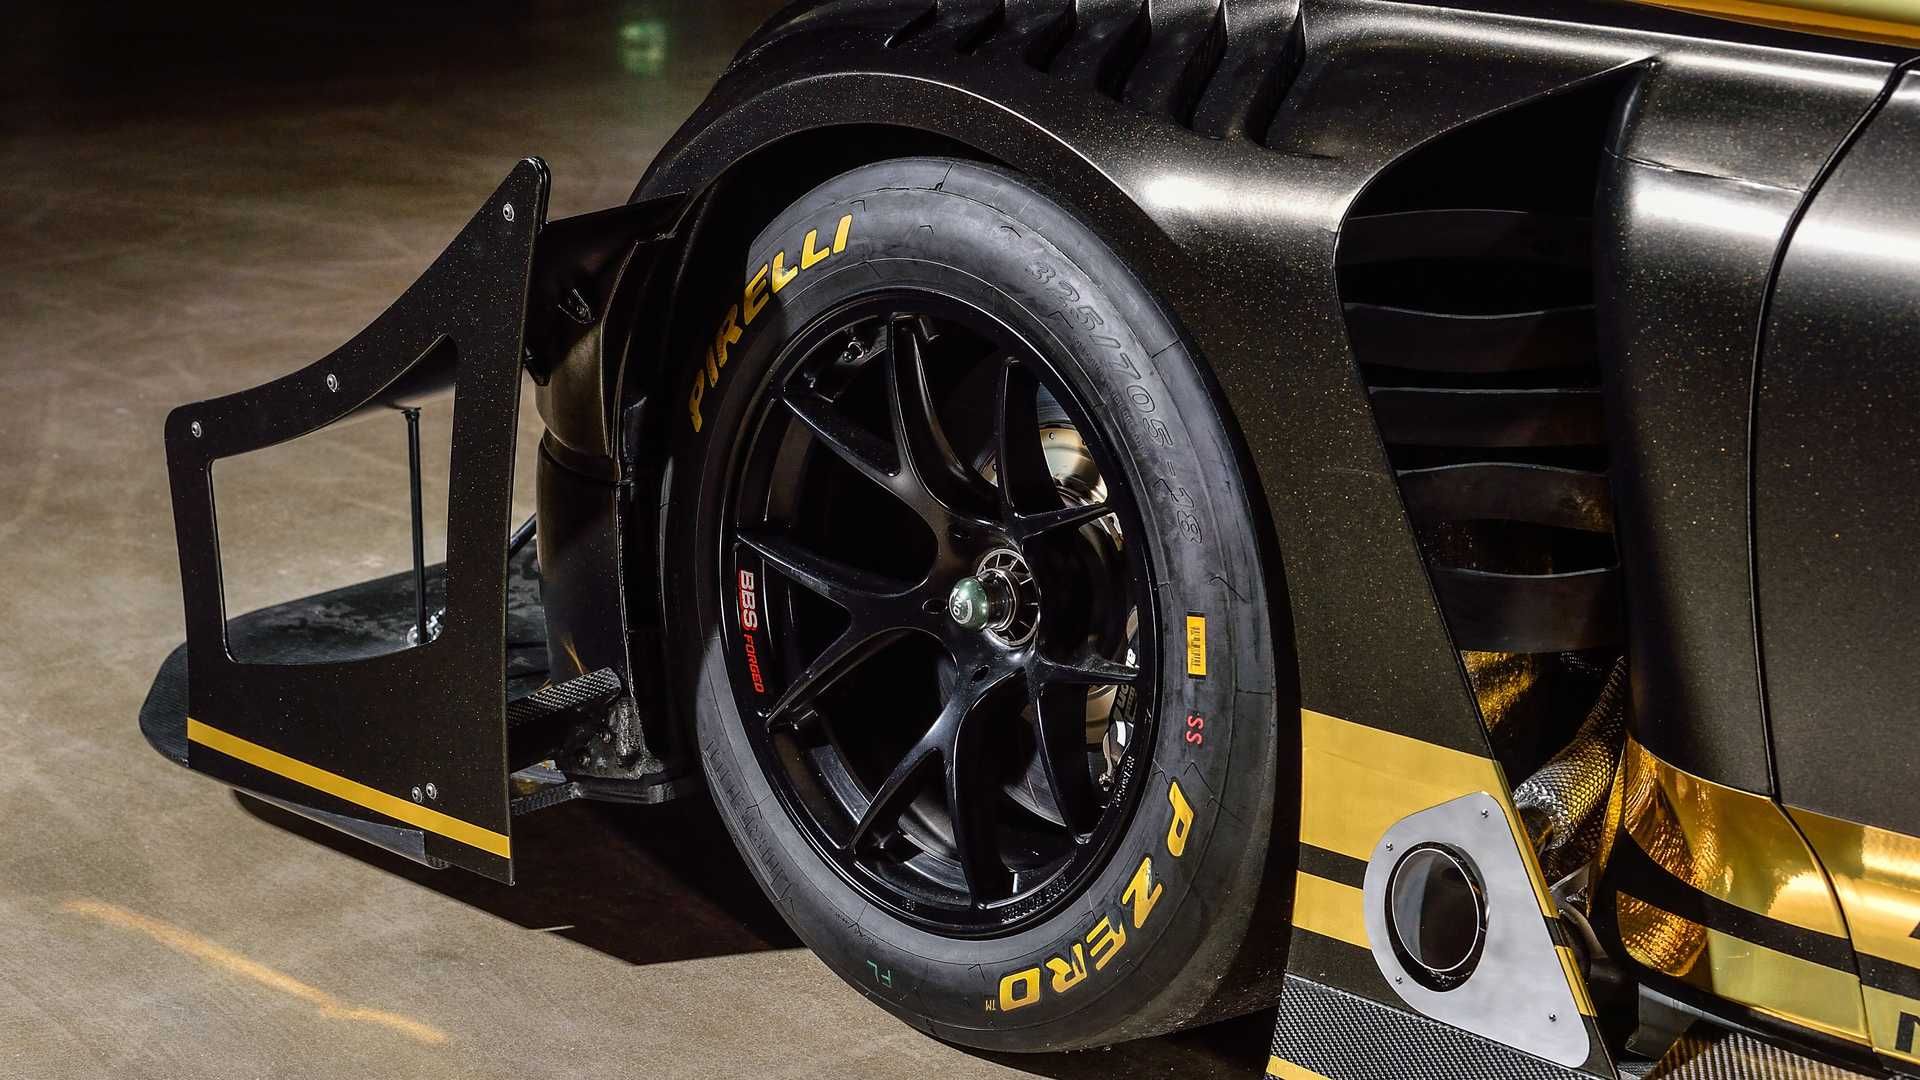 مرجع متخصصين ايران چرخ جلو بنتلي كنتيننتال جي تي 3 پايكز پيك / Bentley Continental GT3 Pikes Peak سياه رنگ